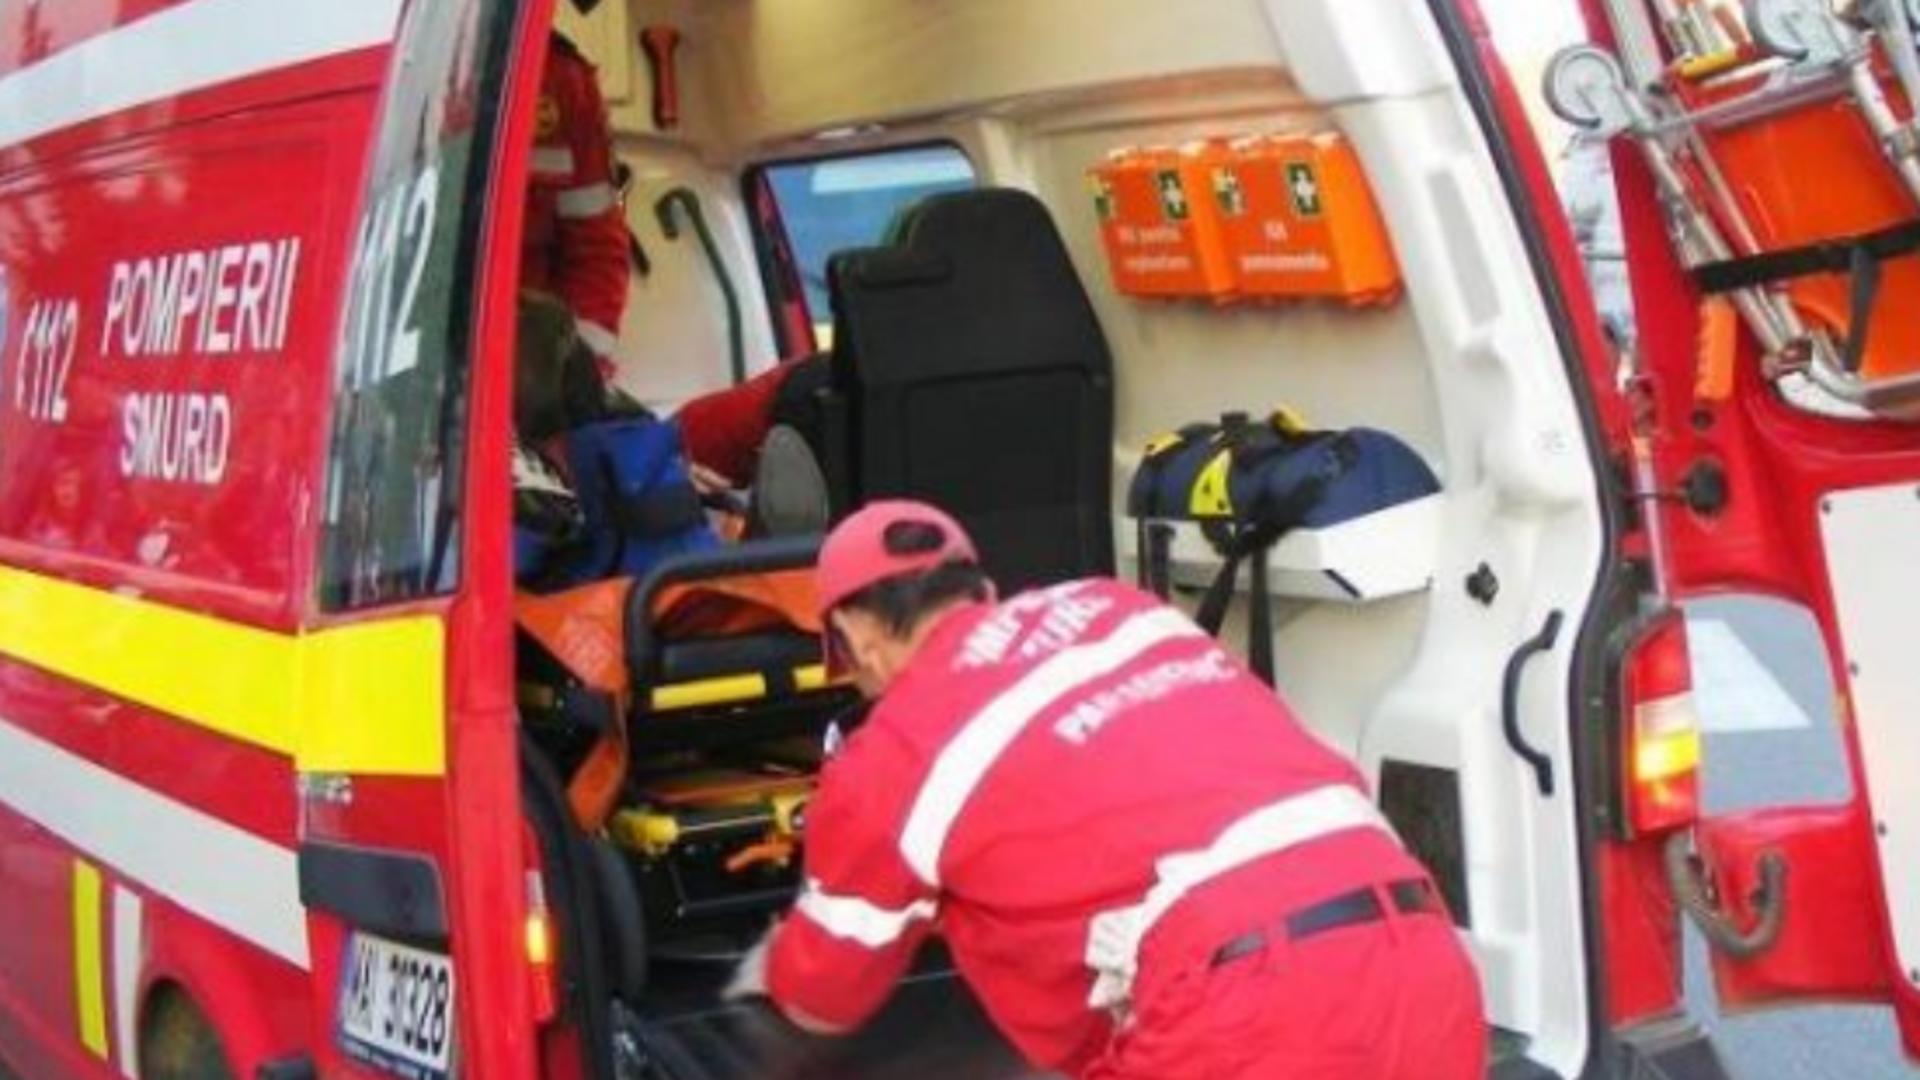 Intervenție ambulanță - imagine de arhivă